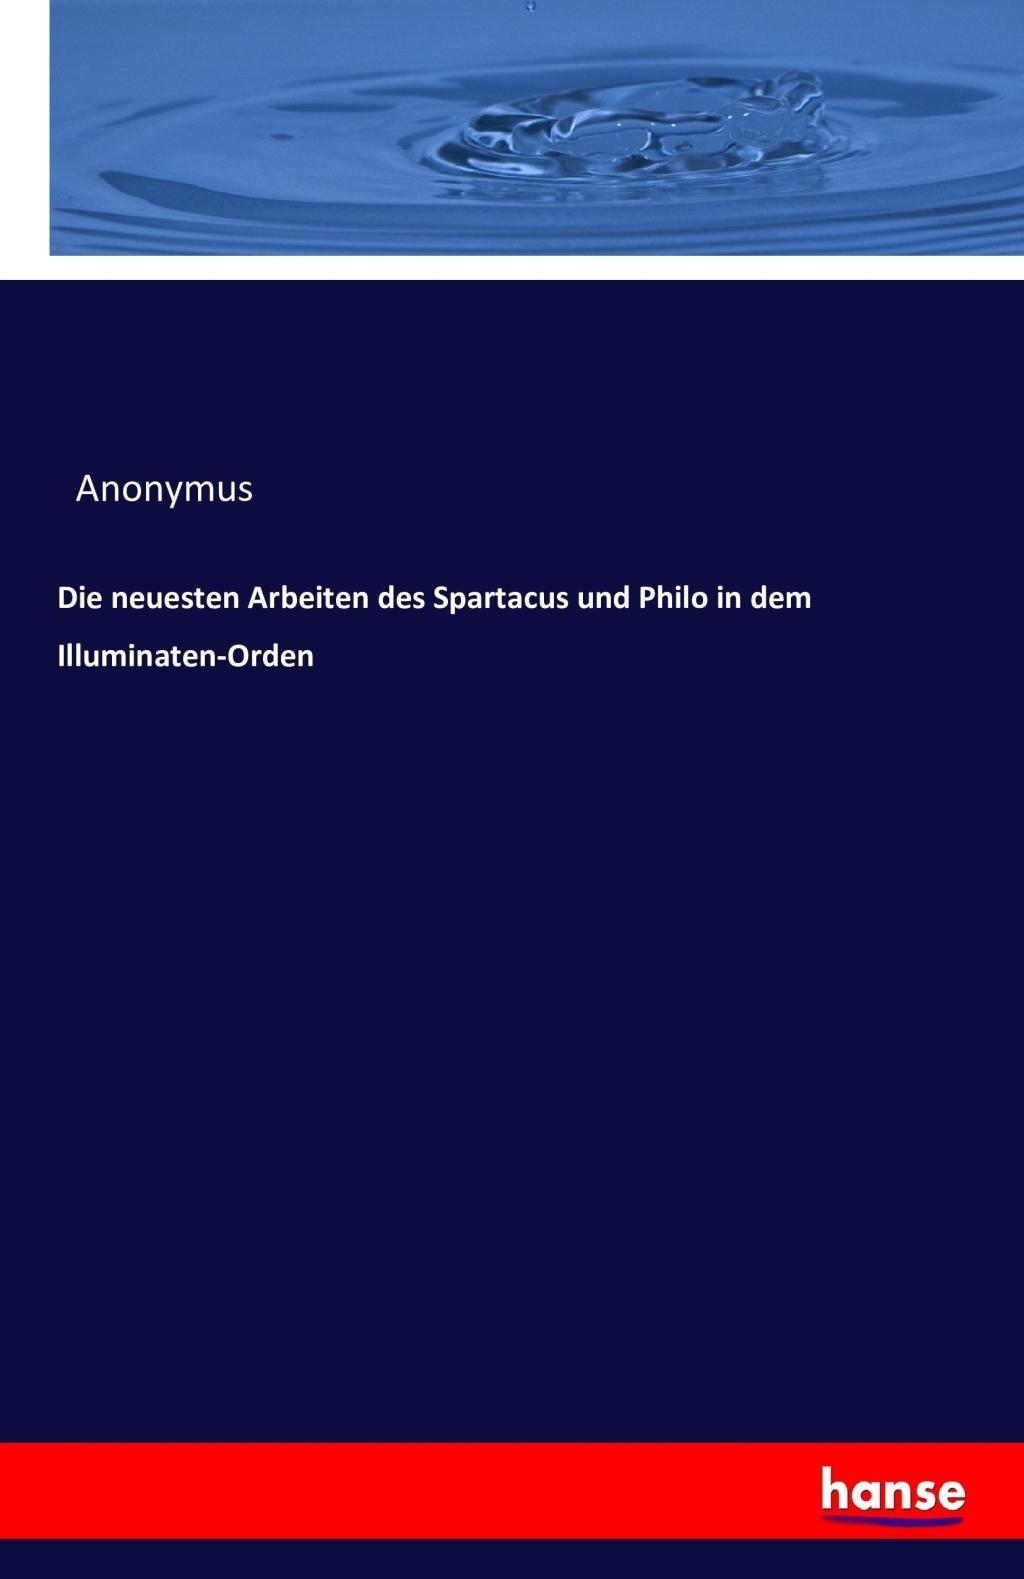 Die neuesten Arbeiten des Spartacus und Philo in dem Illuminaten-Orden - Anonym